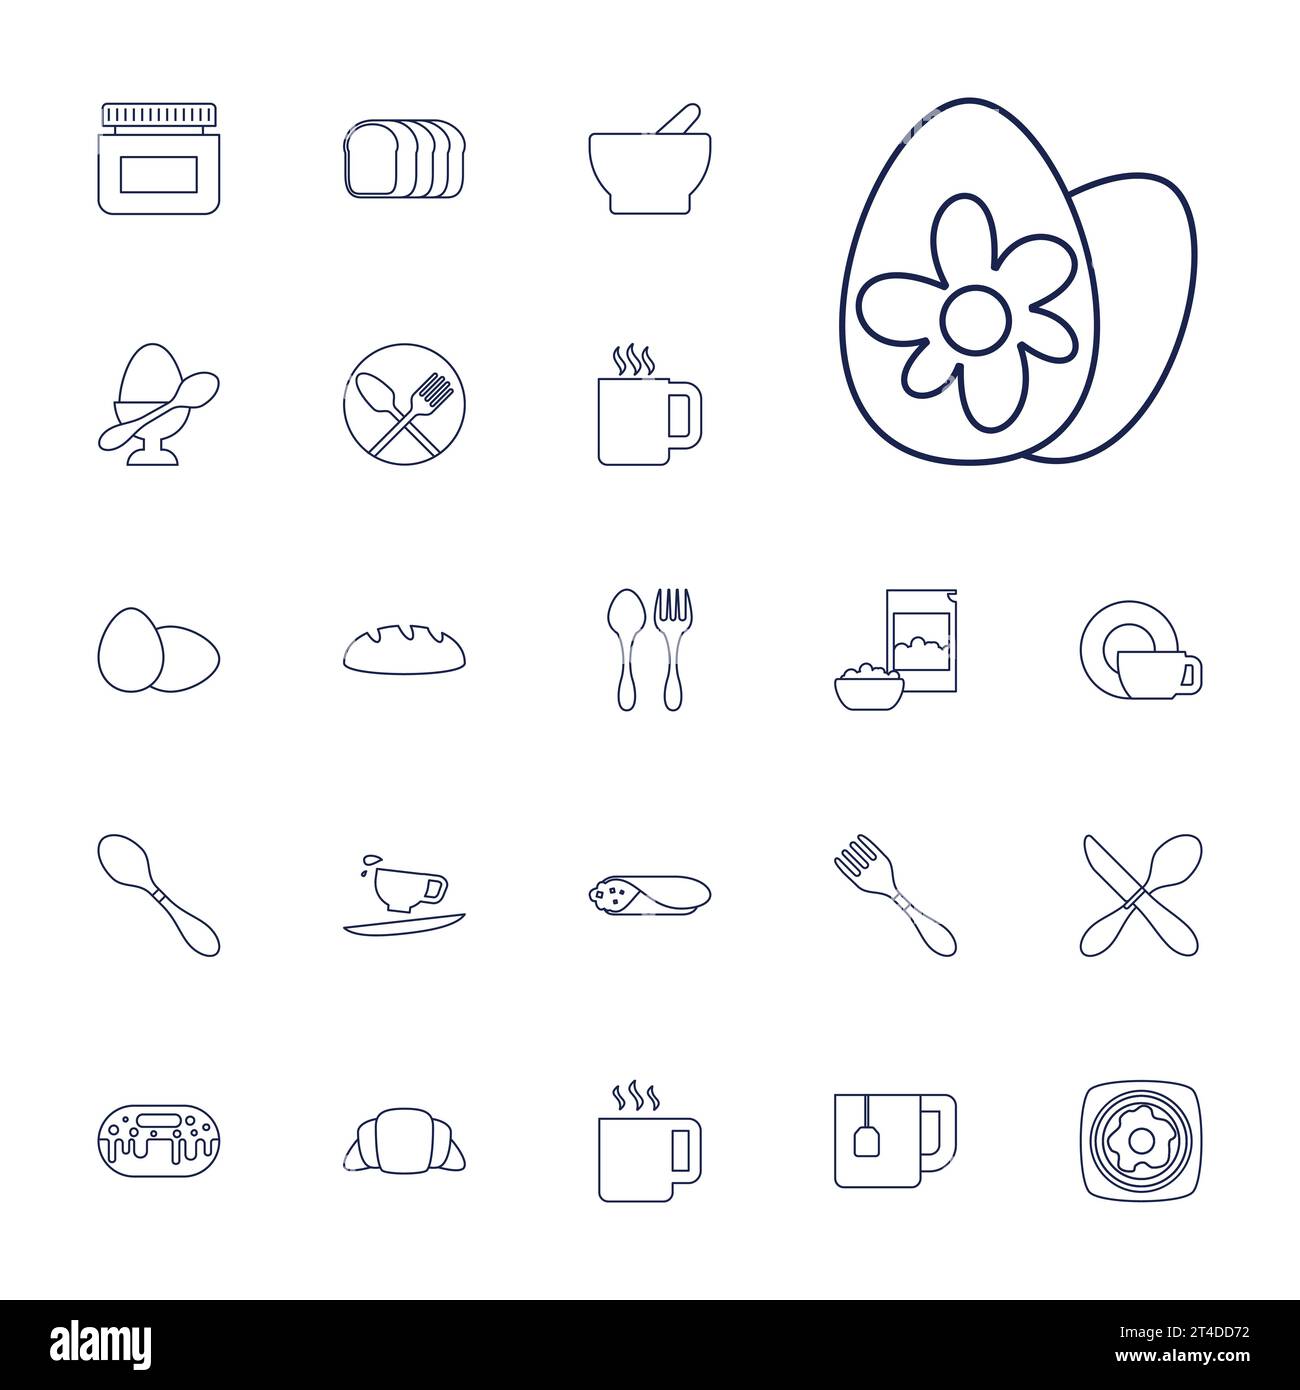 Iconos de desayuno Imagen vectorial libre de regalías Ilustración del Vector